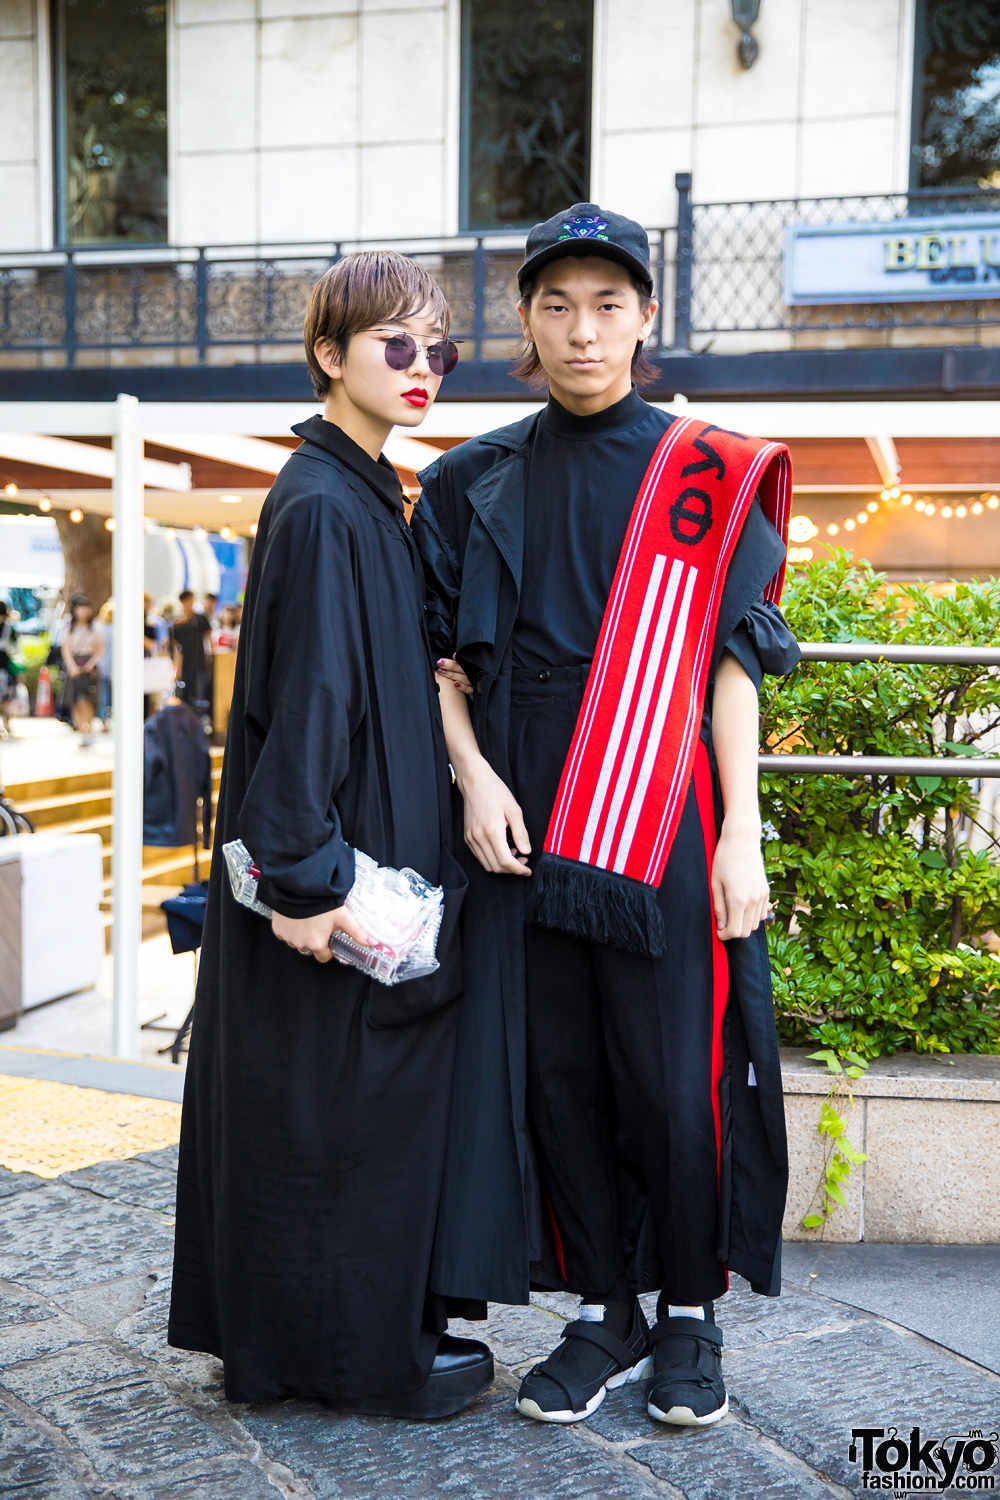 newfashion: Harajuku Fashion